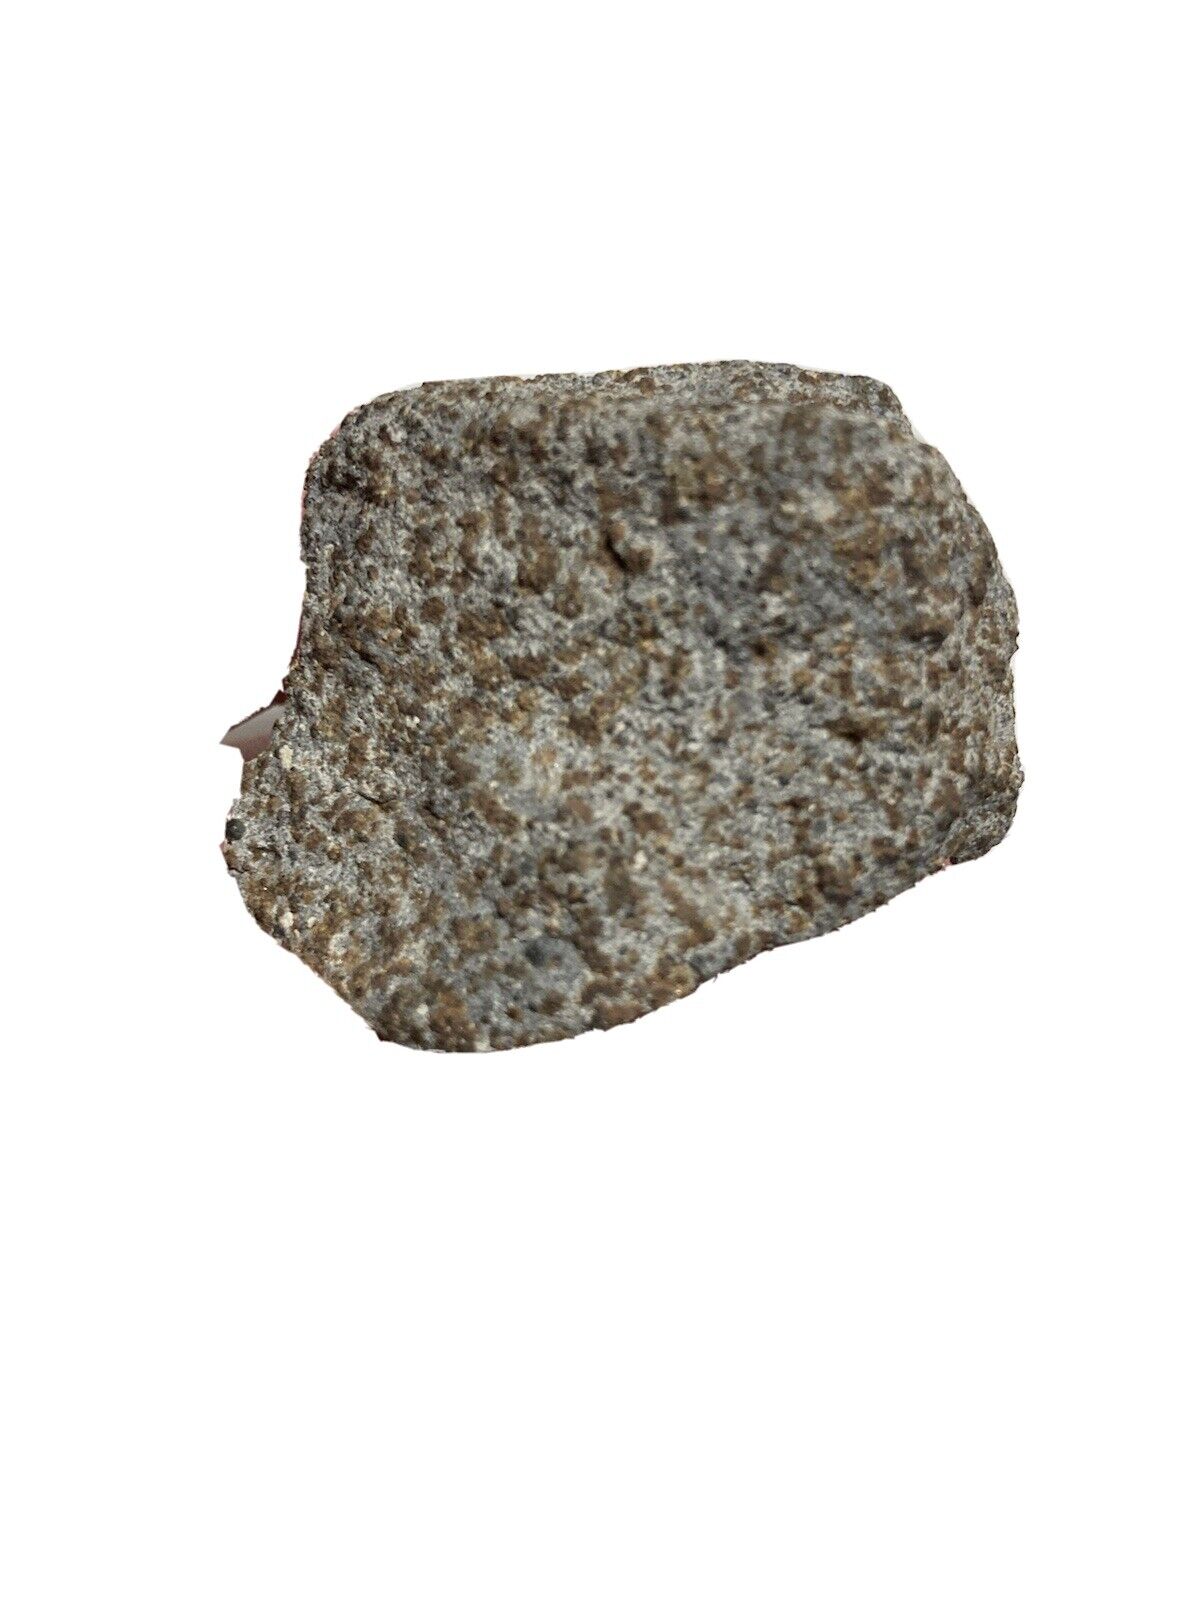 Rare Ochansk Russian Meteorite 97 Grams Haag Provenance